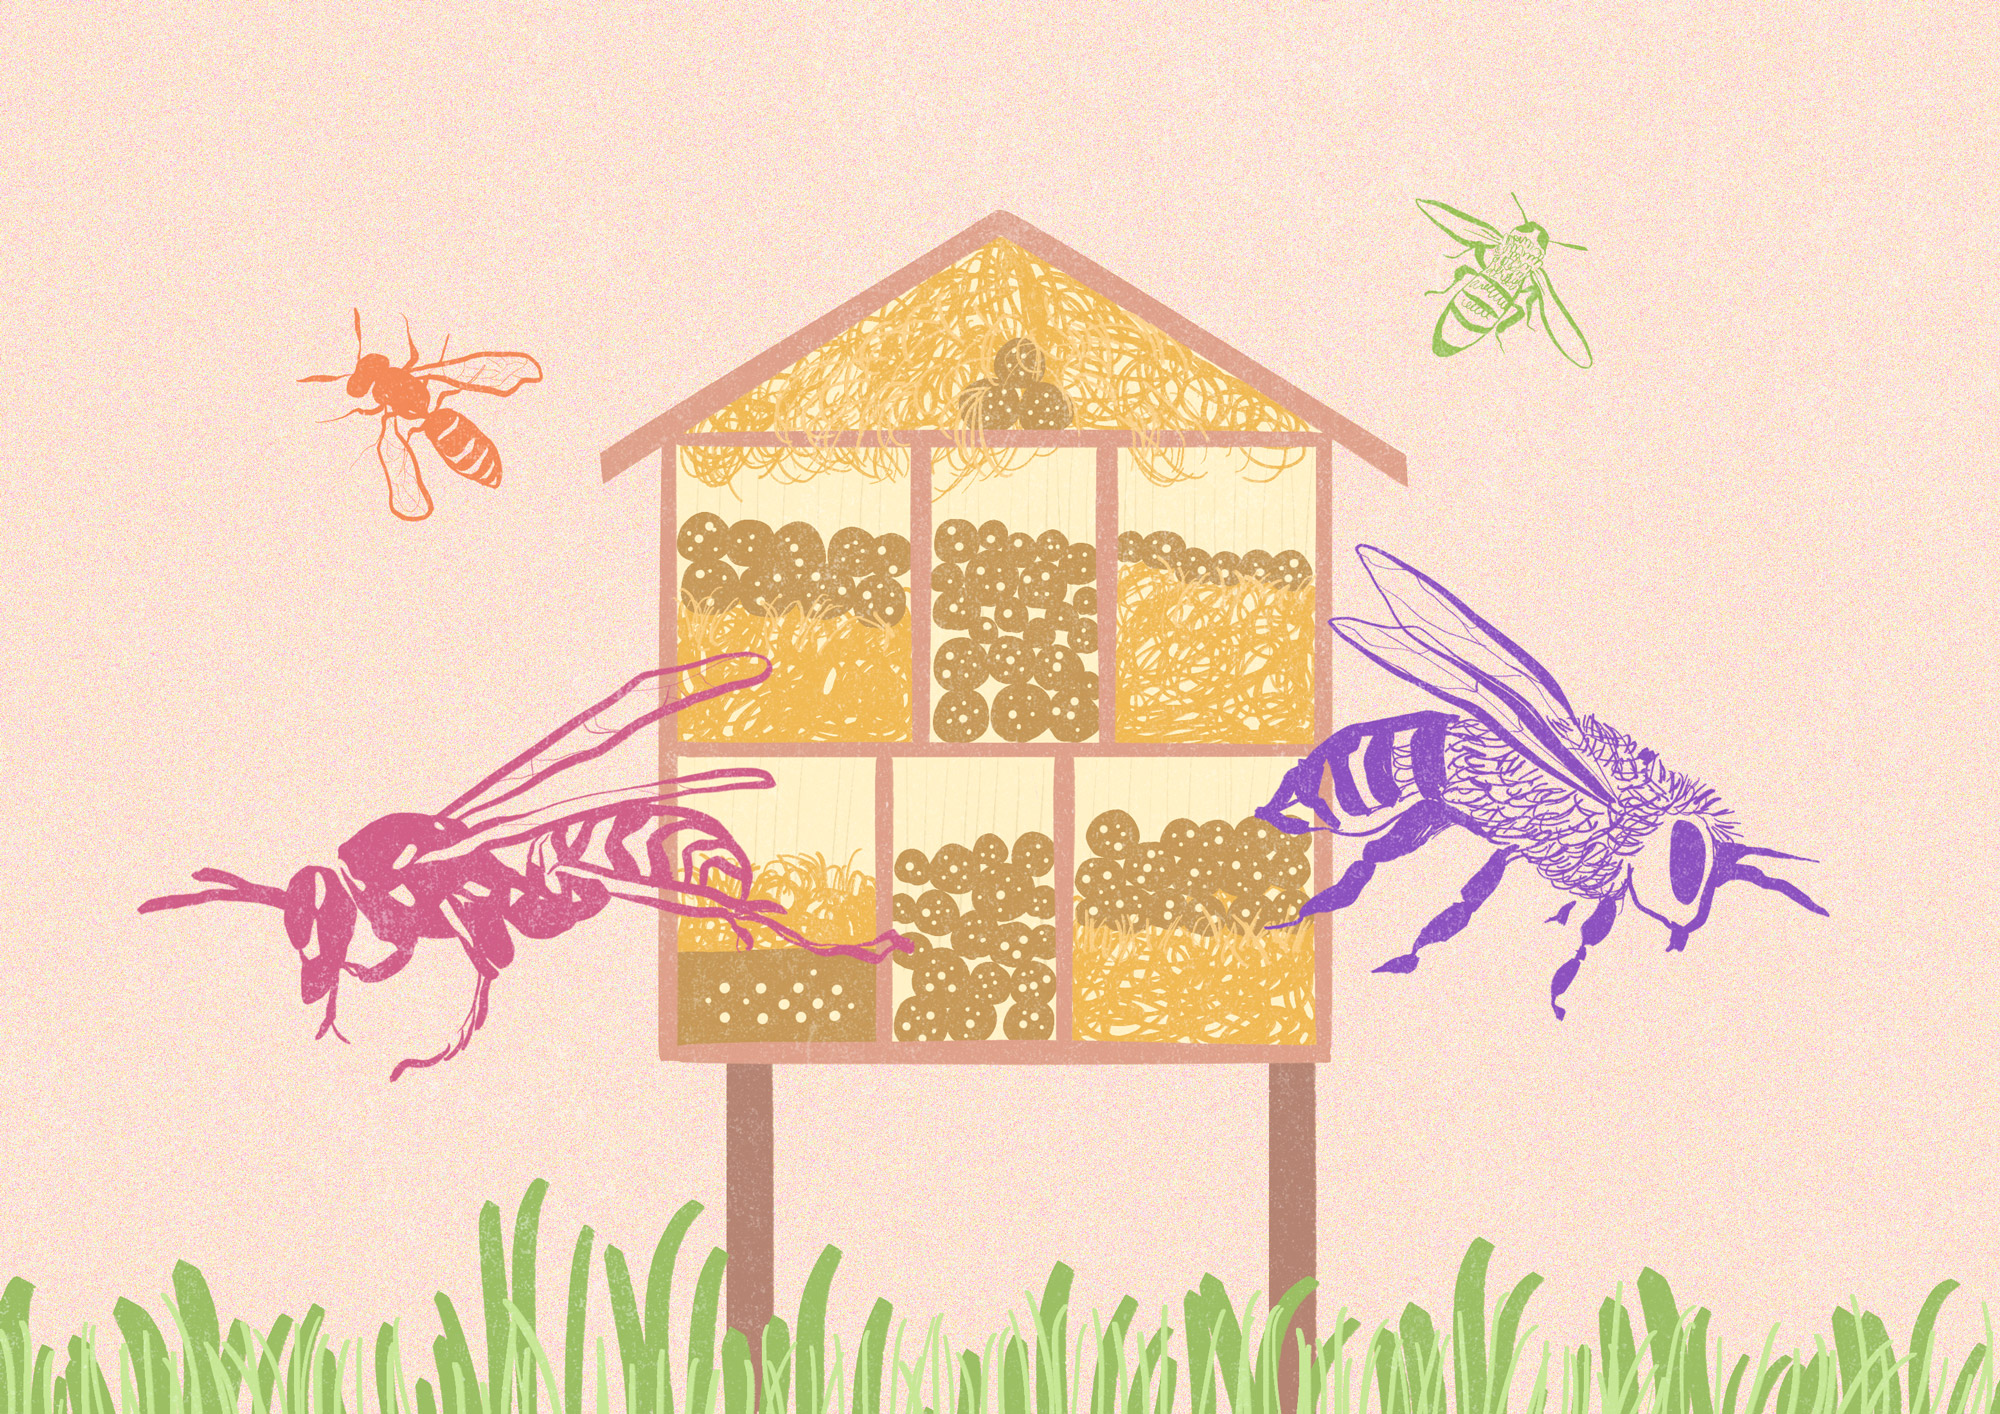 Hotel de insectos, nuestra ayuda para el ecosistema